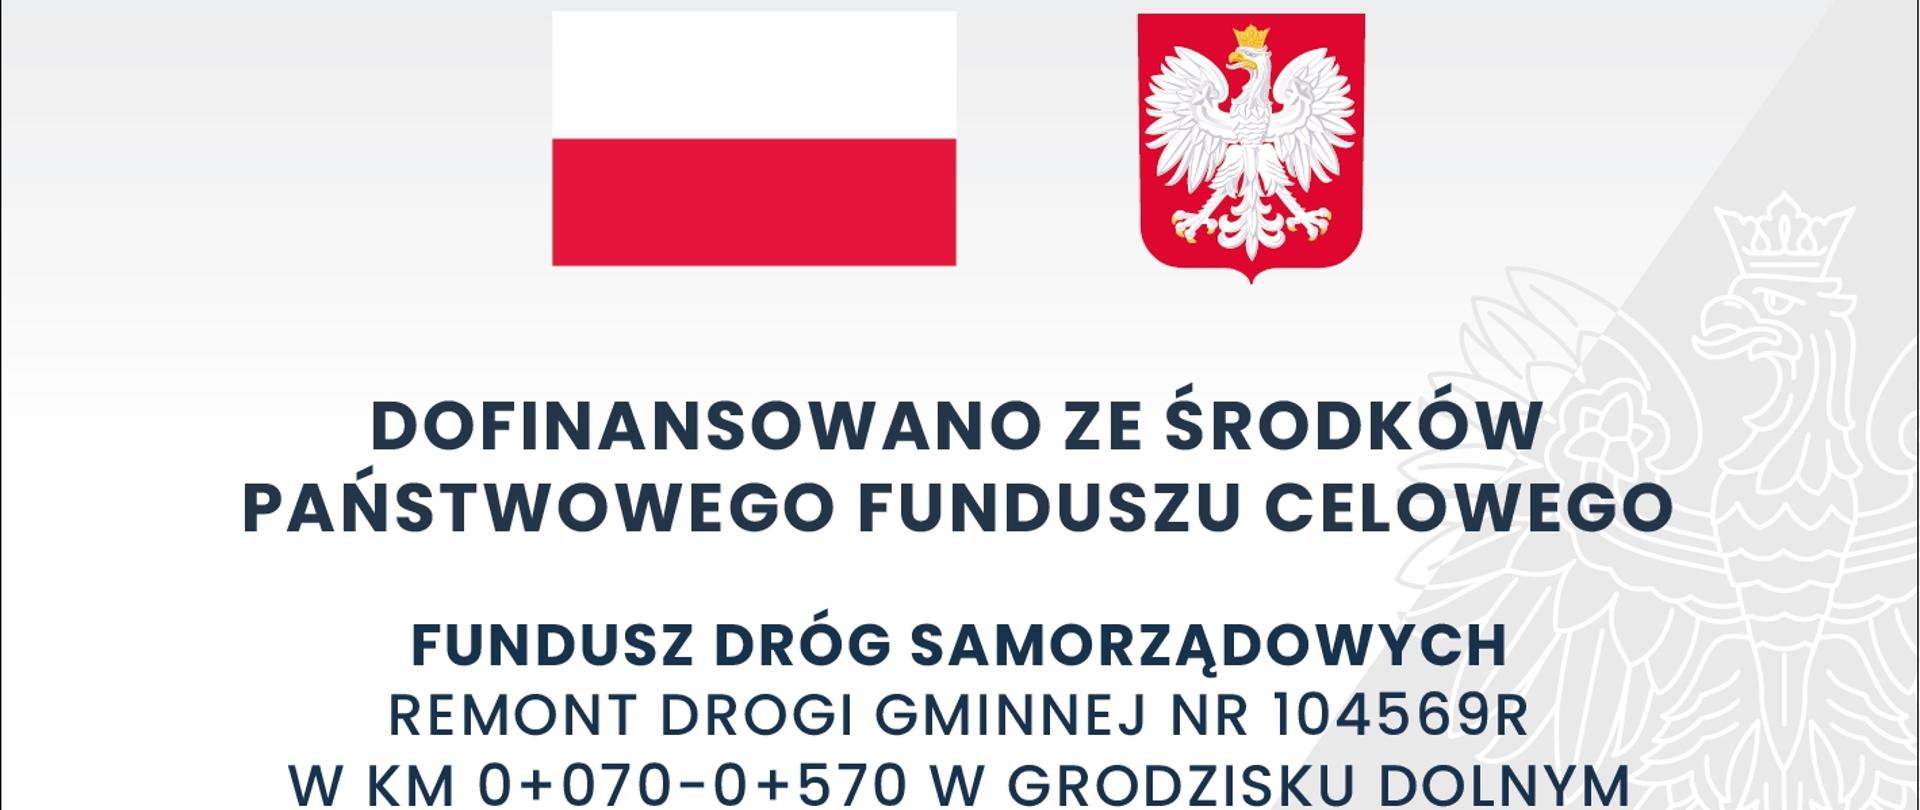 Zdjęcie przedstawia biało czerwoną flagę polski oraz białego orła na czerwonym tyle. Pod tymi grafikami czarnymi literami wykonany napis: dofinansowano ze środków Państwowego Funduszu Celowego. 